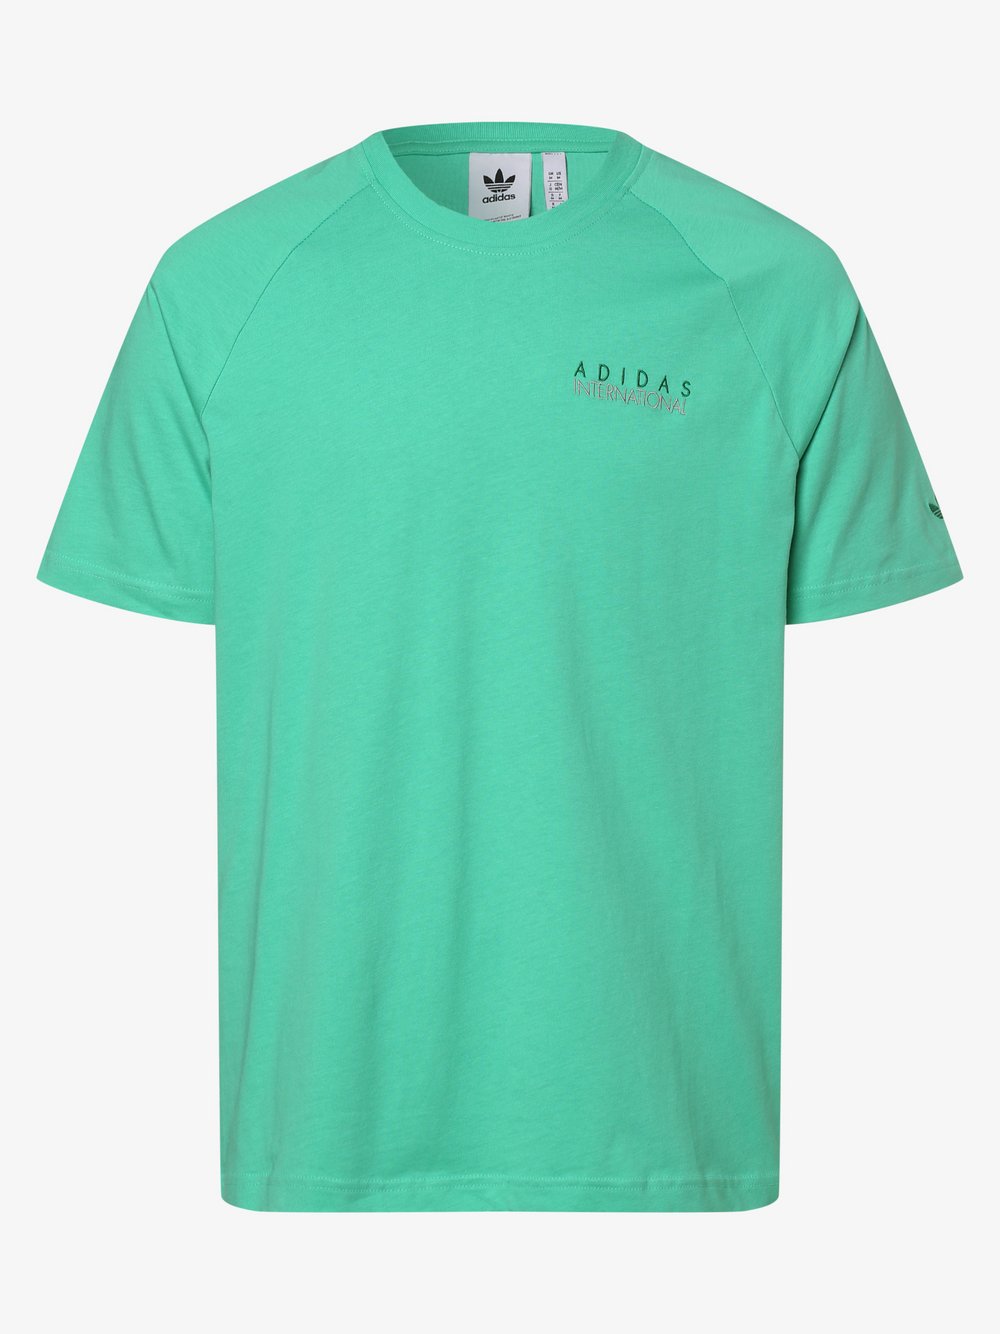 Adidas Originals - T-shirt męski, zielony